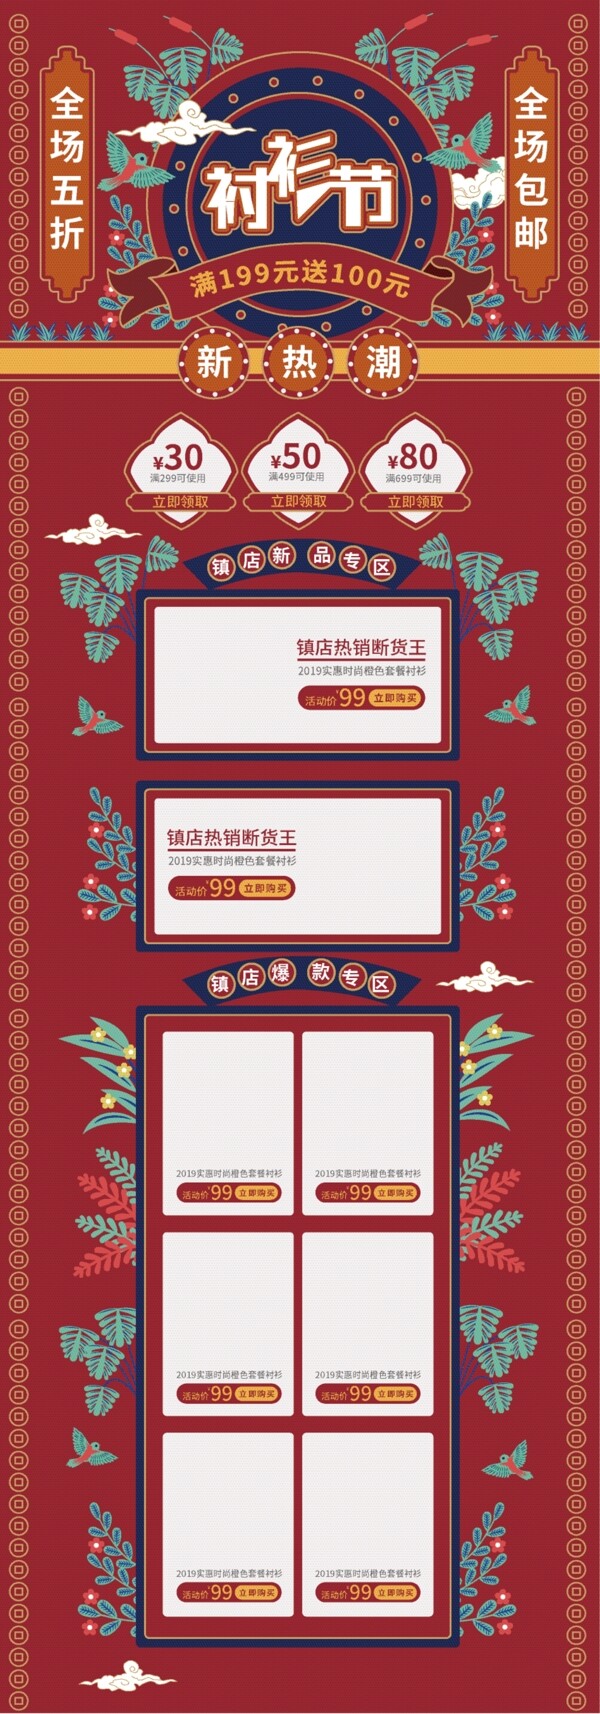 红色中国风衬衫节活动促销首页